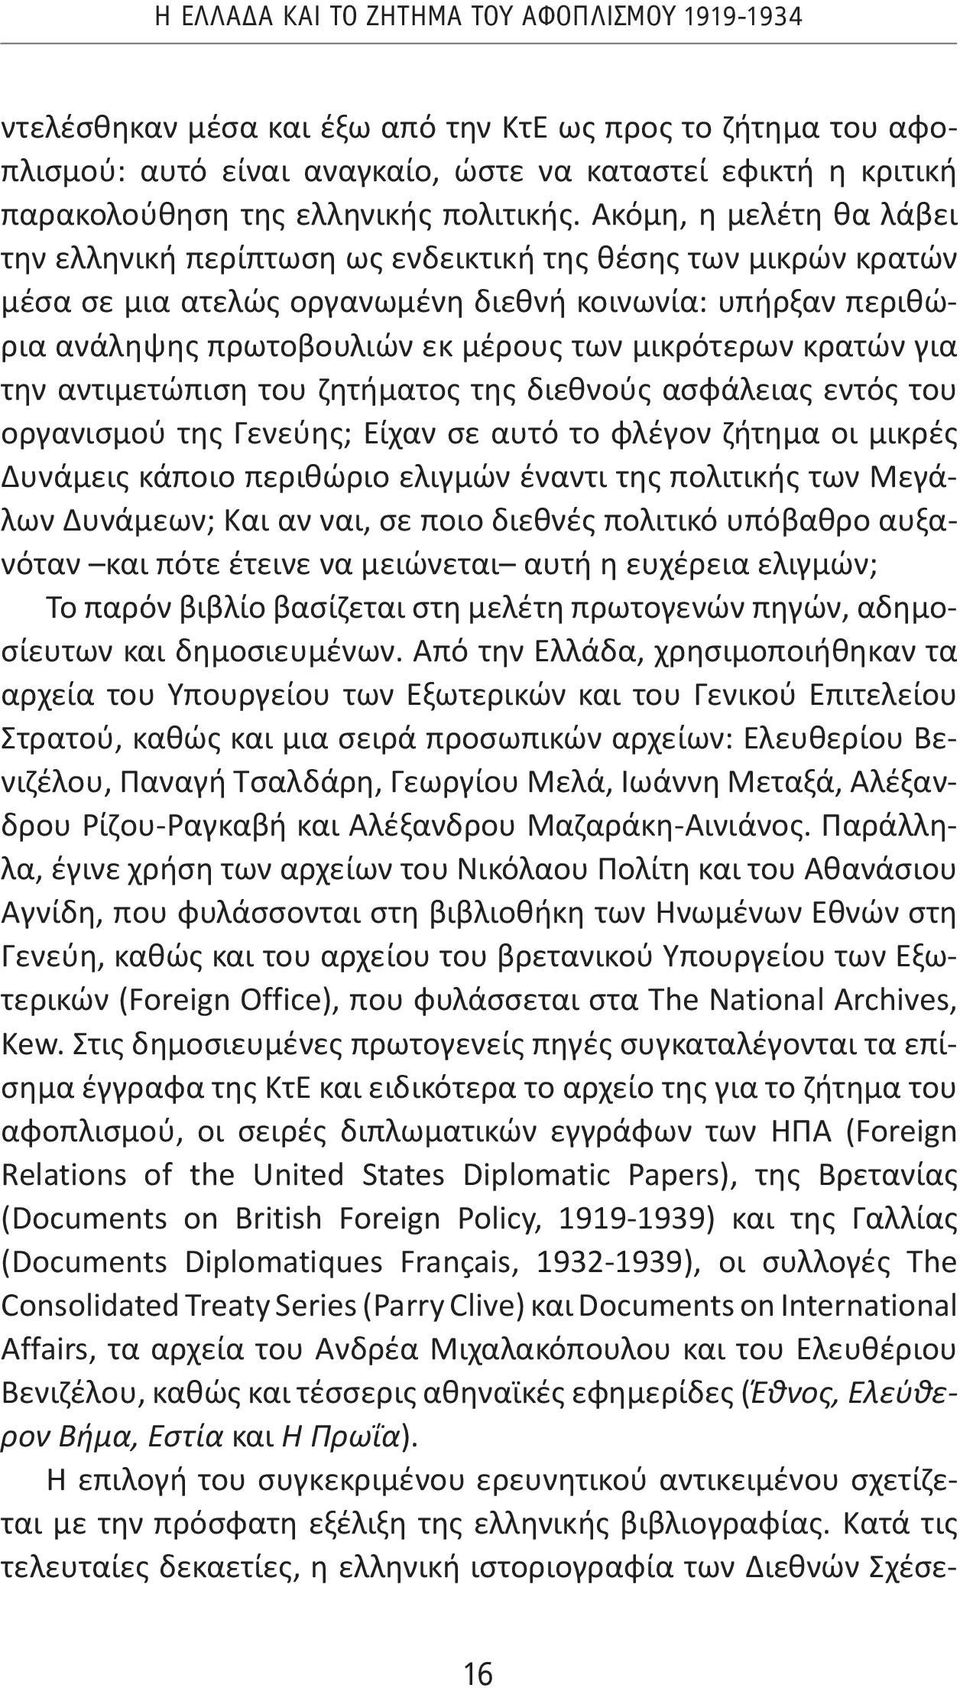 Ακόμη, η μελέτη θα λάβει την ελληνική περίπτωση ως ενδεικτική της θέσης των μικρών κρατών μέσα σε μια ατελώς οργανωμένη διεθνή κοινωνία: υπήρξαν περιθώρια ανάληψης πρωτοβουλιών εκ μέρους των